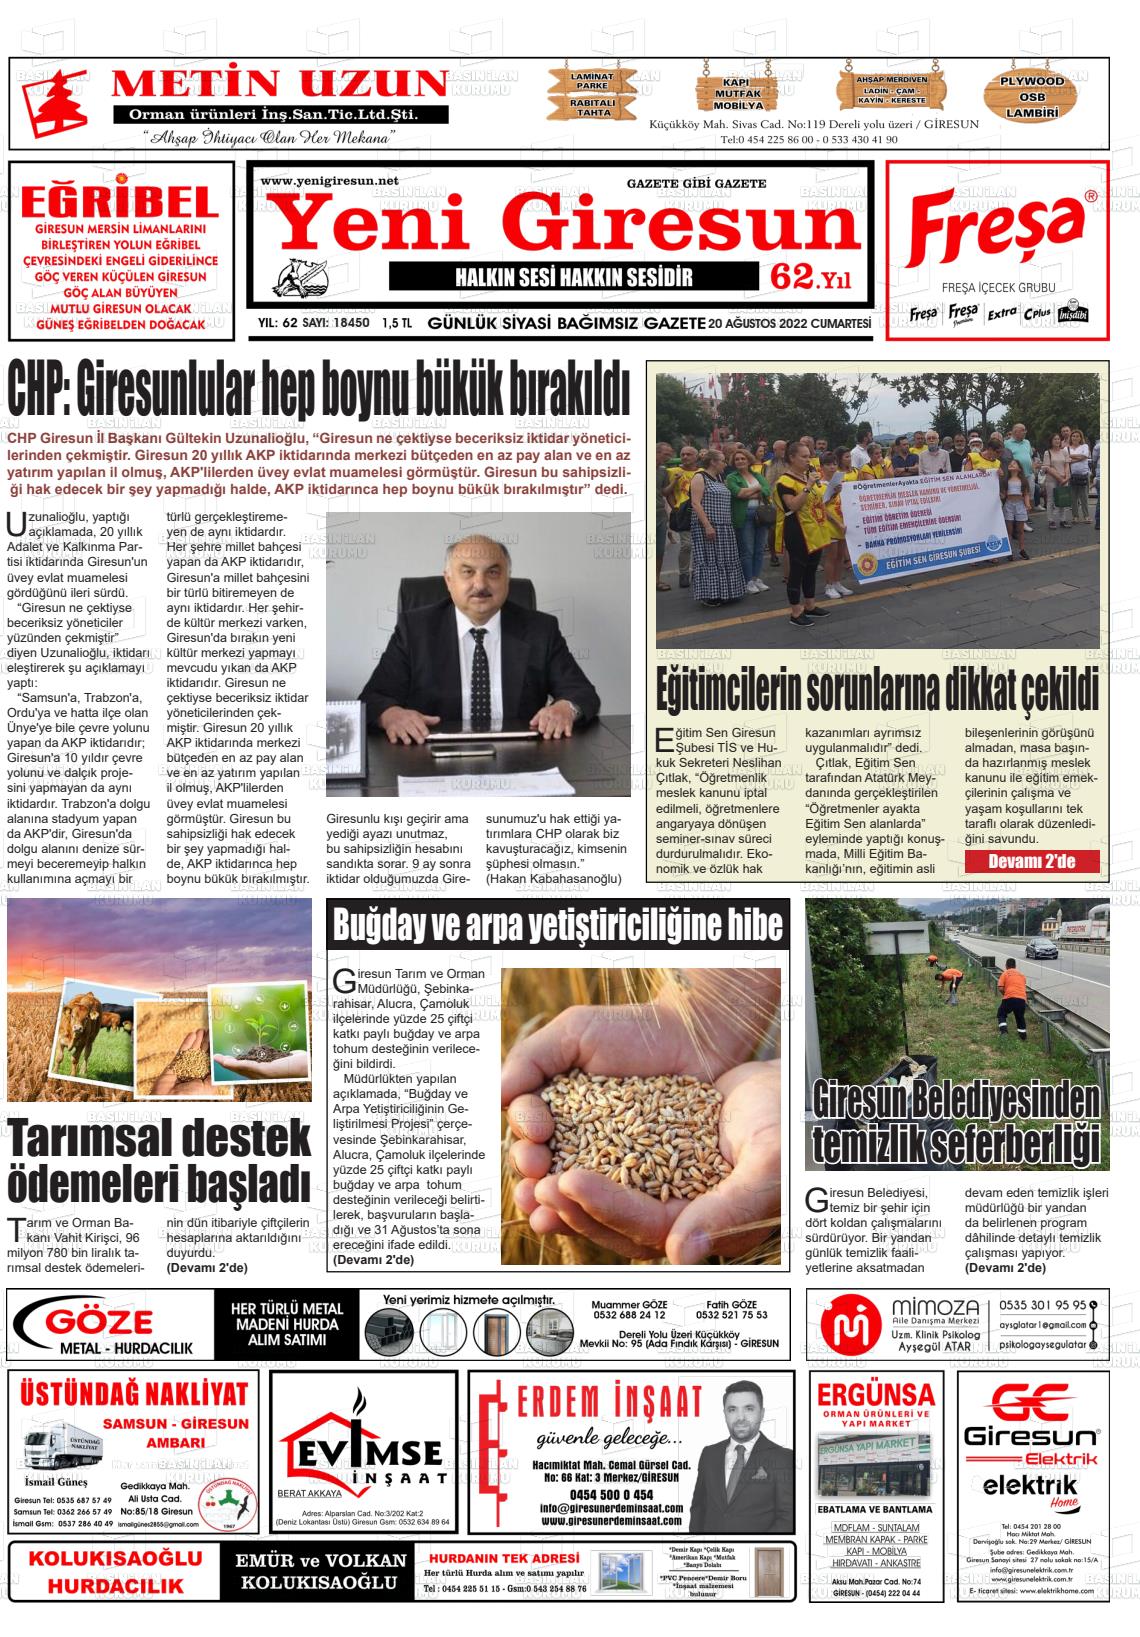 20 Ağustos 2022 Yeni Giresun Gazete Manşeti